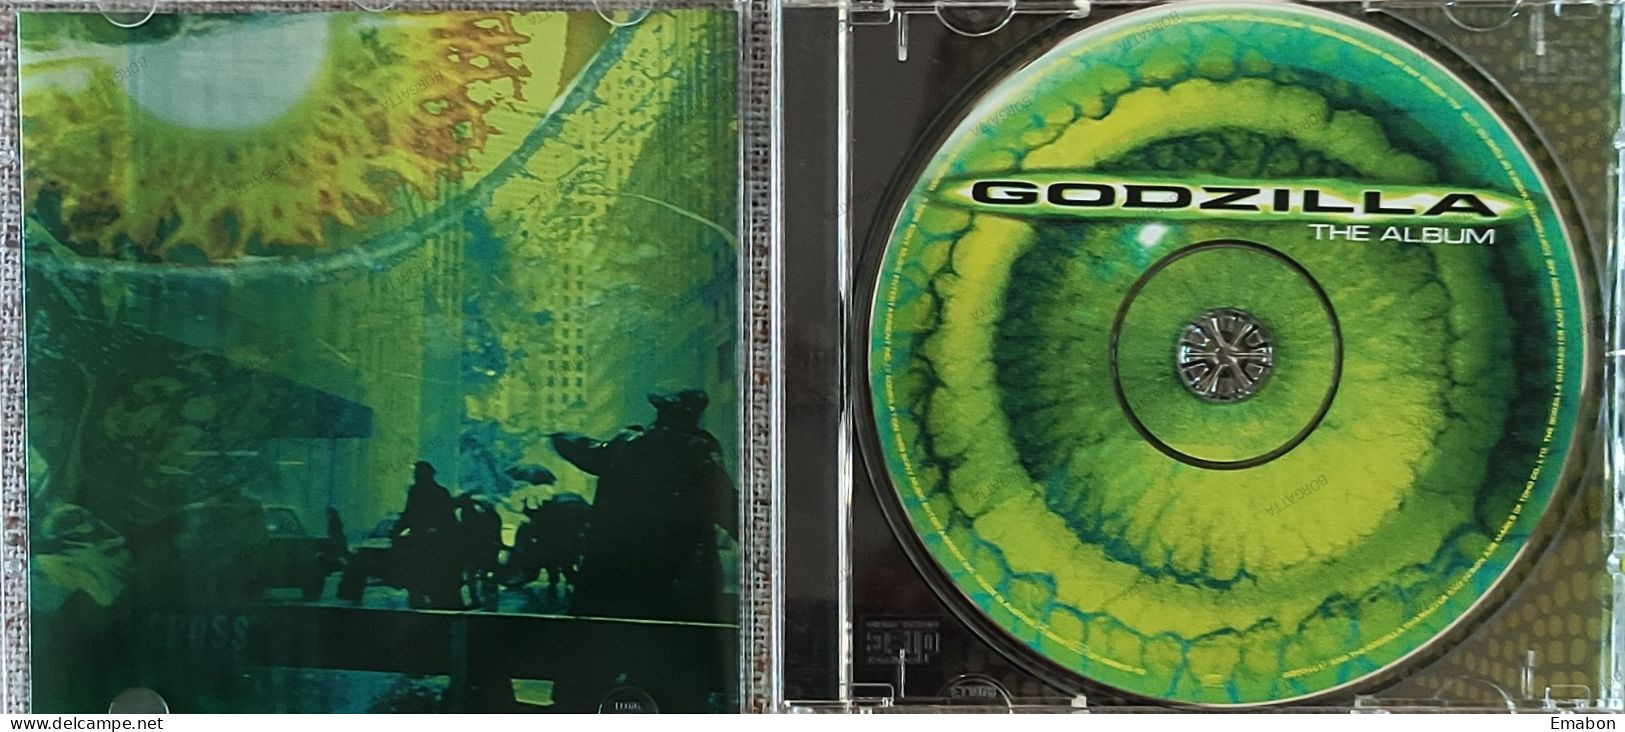 BORGATTA - FILM MUSIC  - Cd   THE ALBUM GODZILLA - EPIC/SONY 1998- USATO In Buono Stato - Soundtracks, Film Music